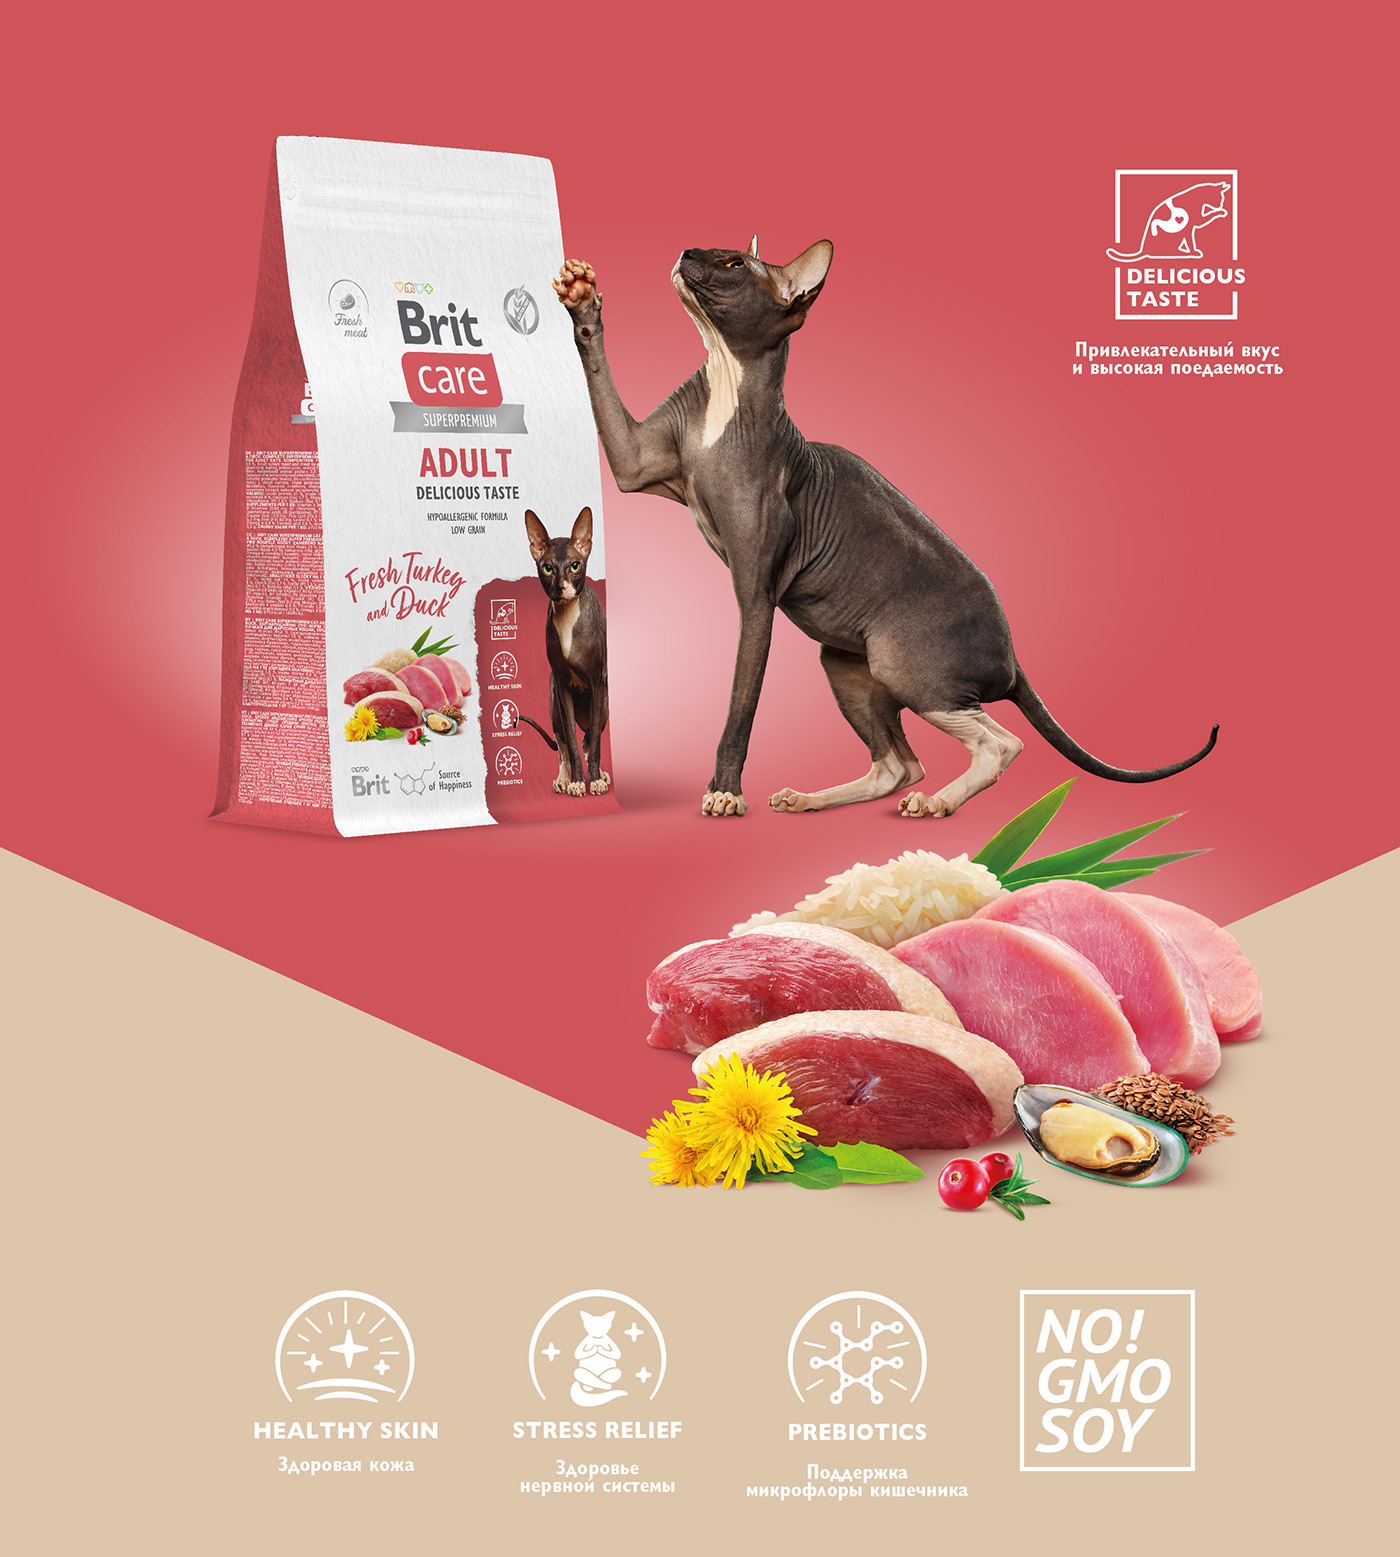 Pet pet food Pet Food Packaging Cat cat food dog dog food Packaging packaging design dry pet food